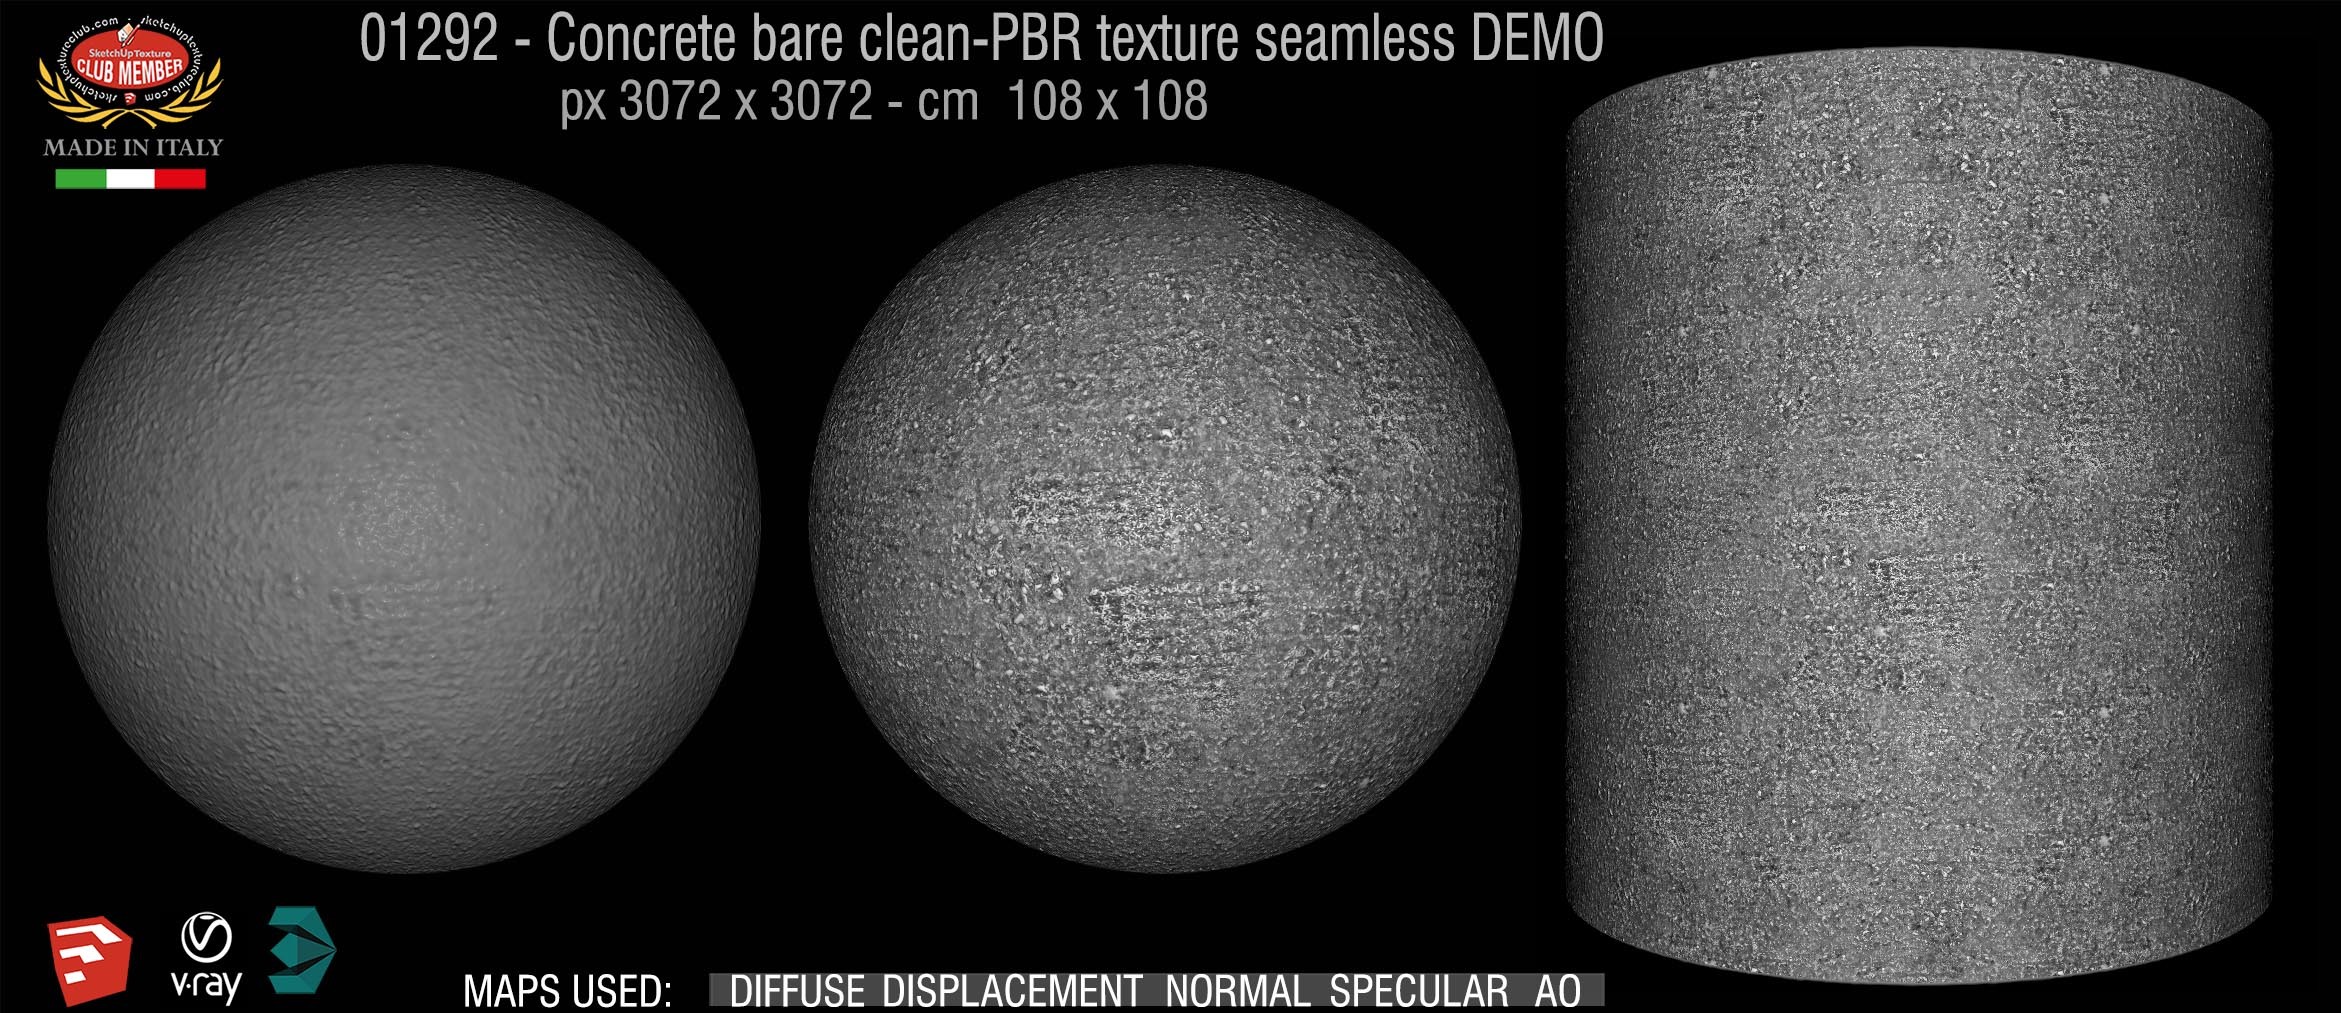 01292 Concrete bare clean-PBR texture seamless DEMO